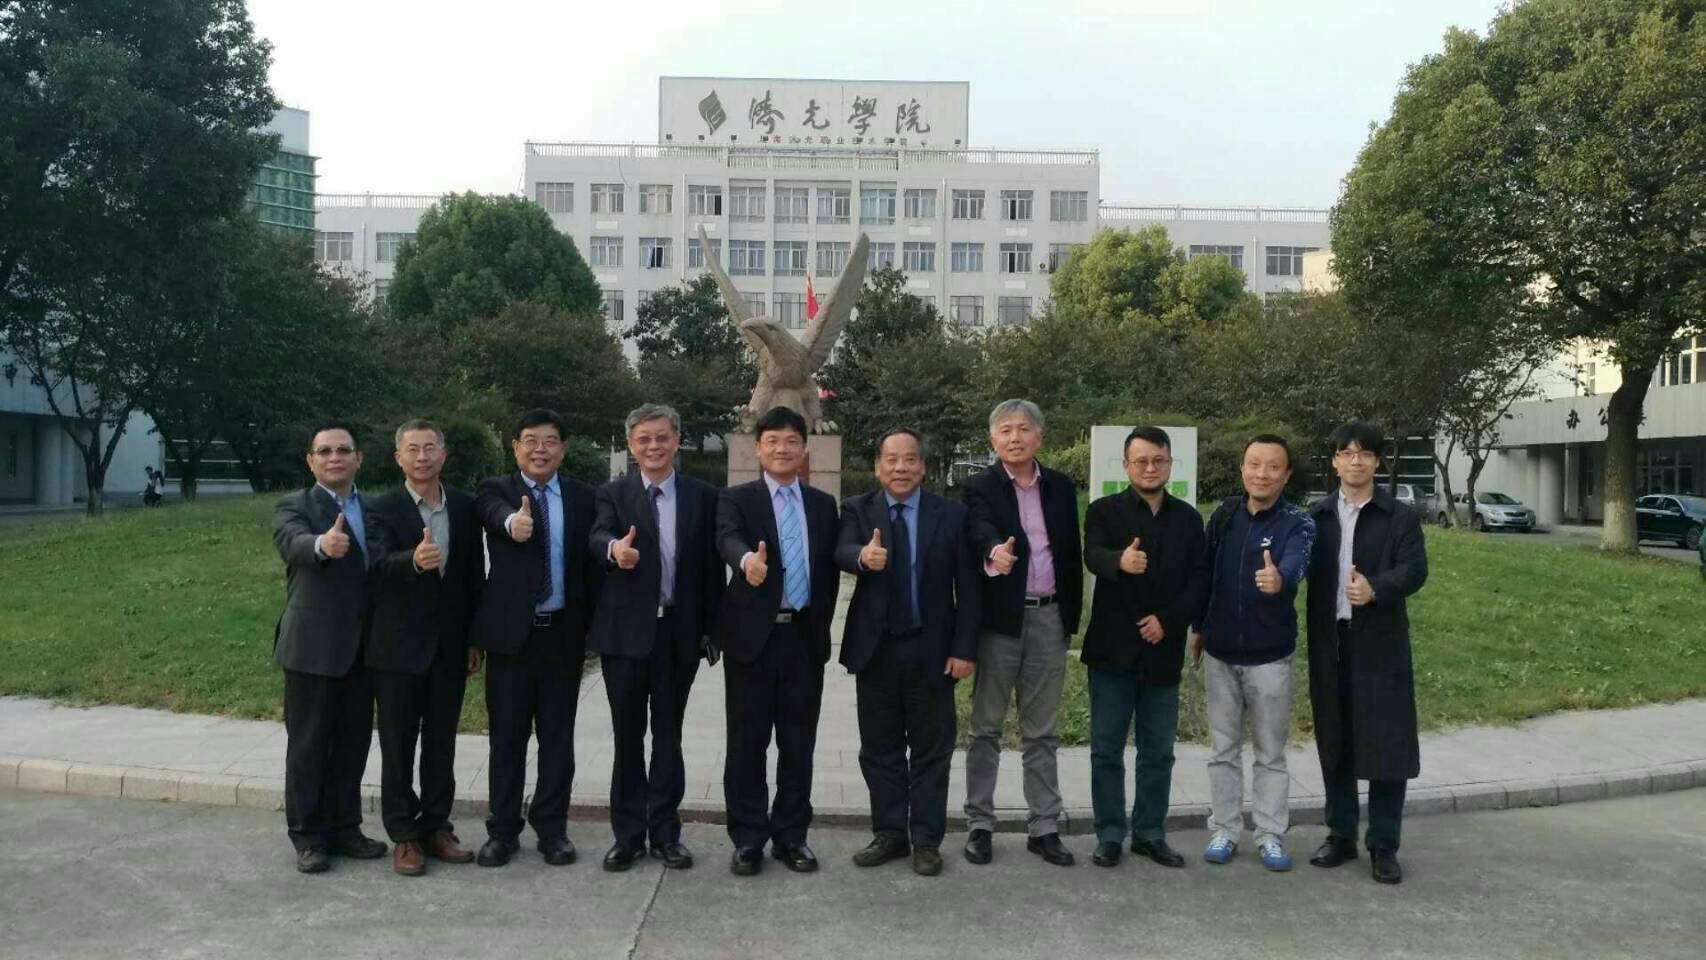 2018年曾鴻鍊理事長（左四）促成聖約翰科大與上海濟光職業技術學院之交流，並簽署合作意向書，兩校將就專業學習、師資培訓和學生交流實質合作。